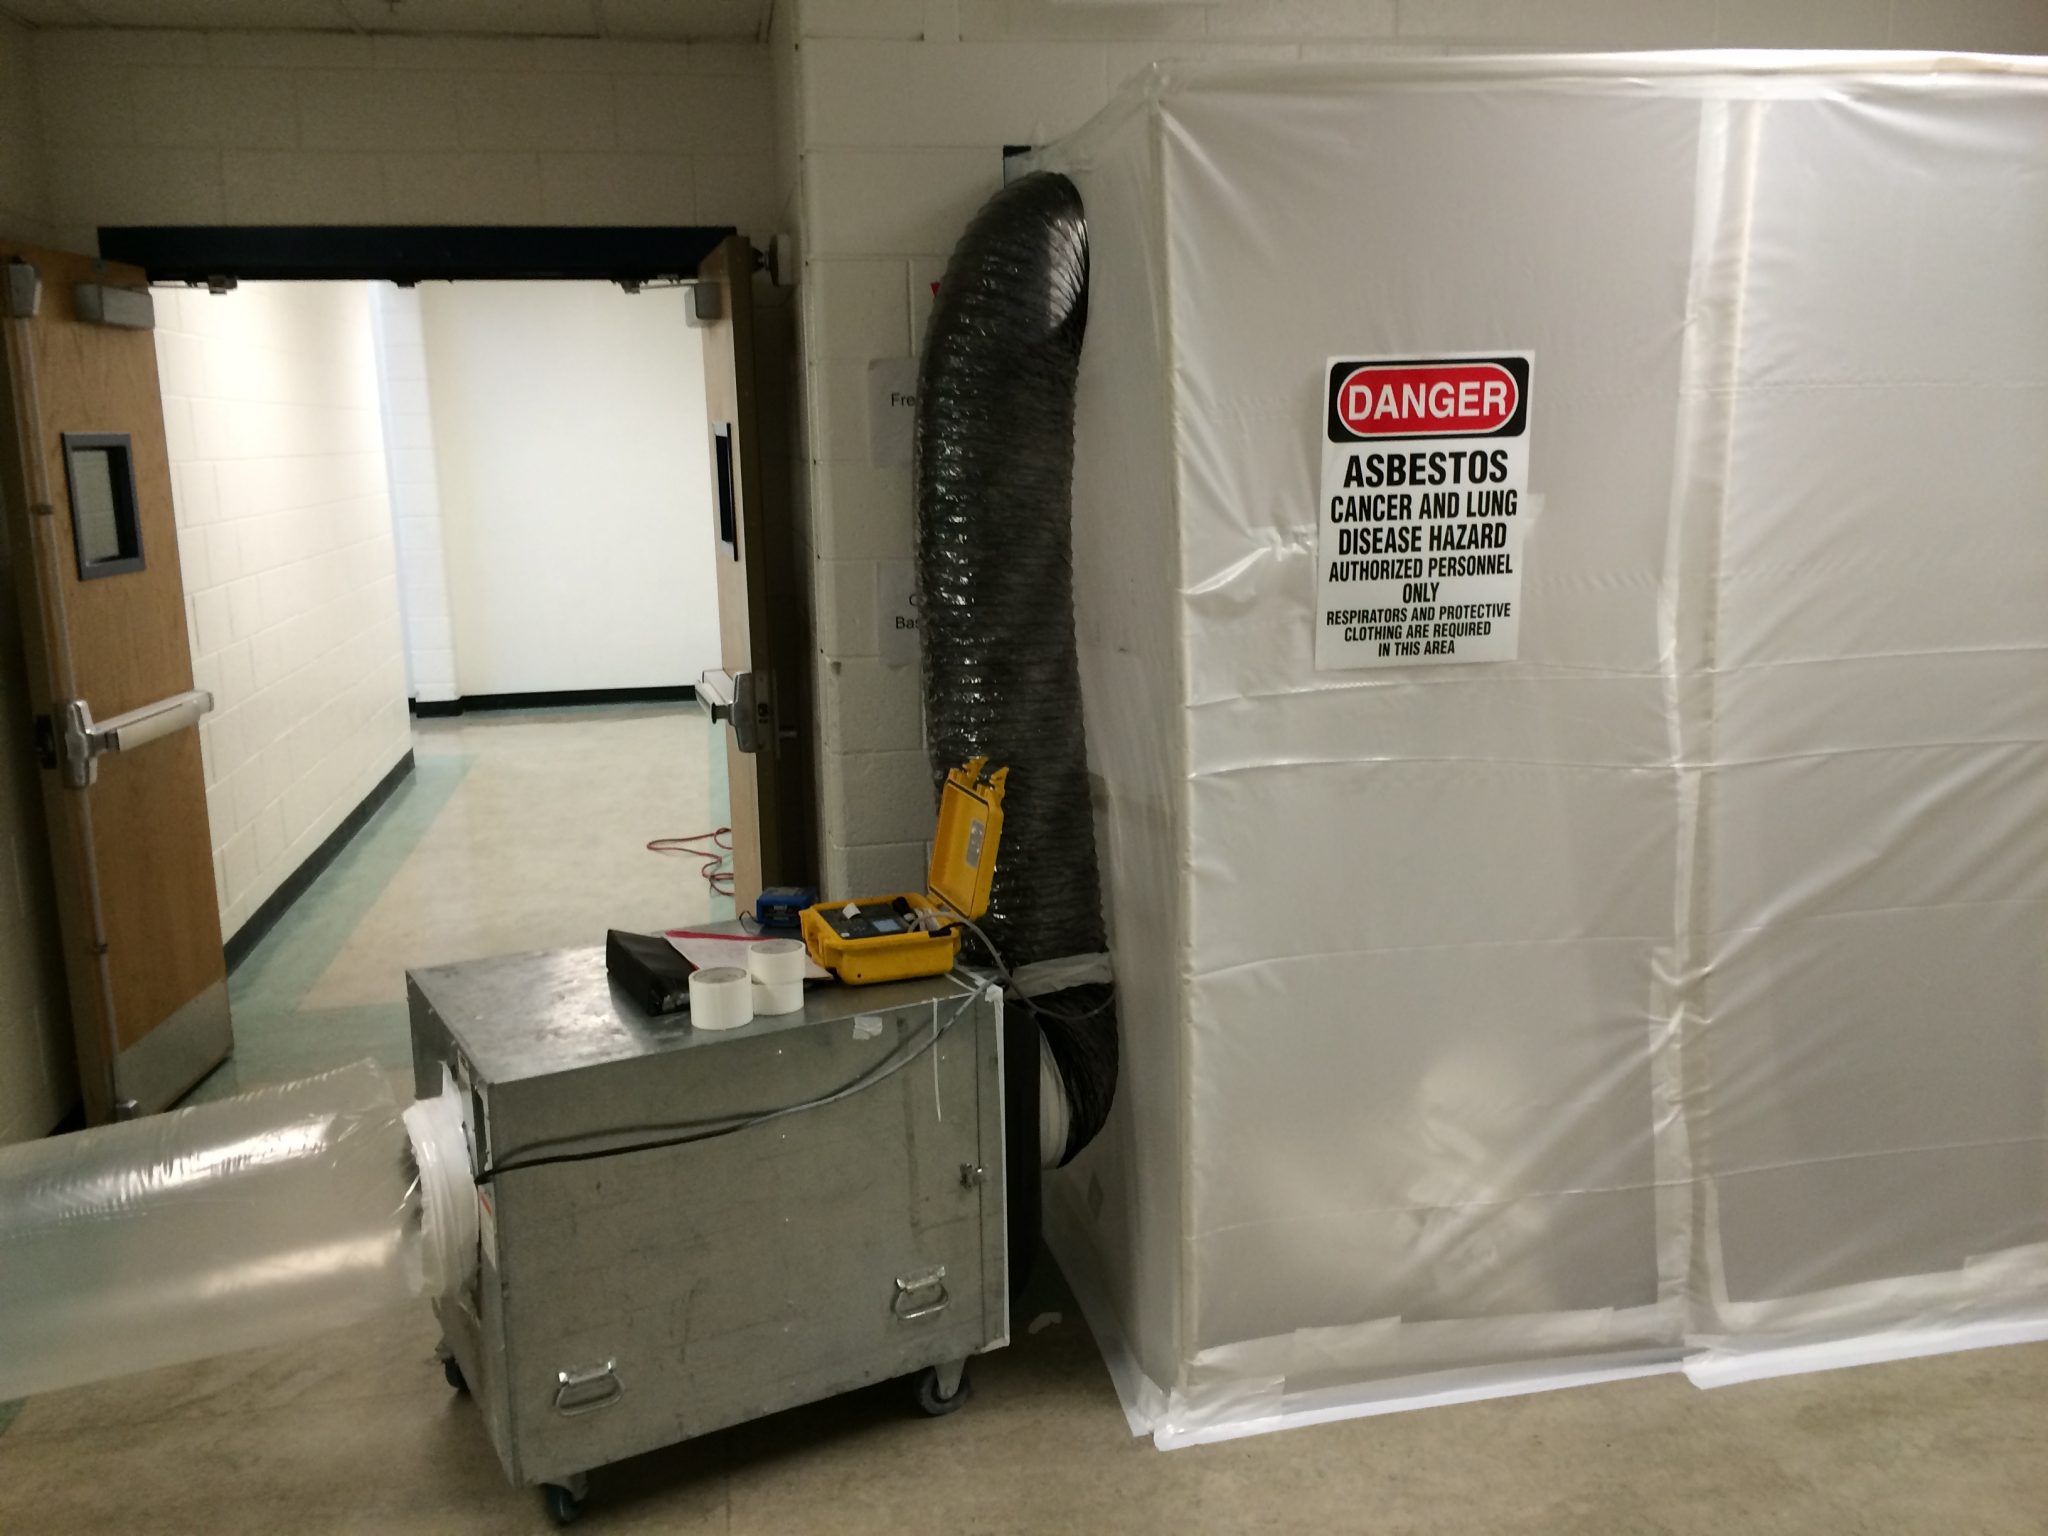 Utah Disaster Kleenup: Asbestos Abatement